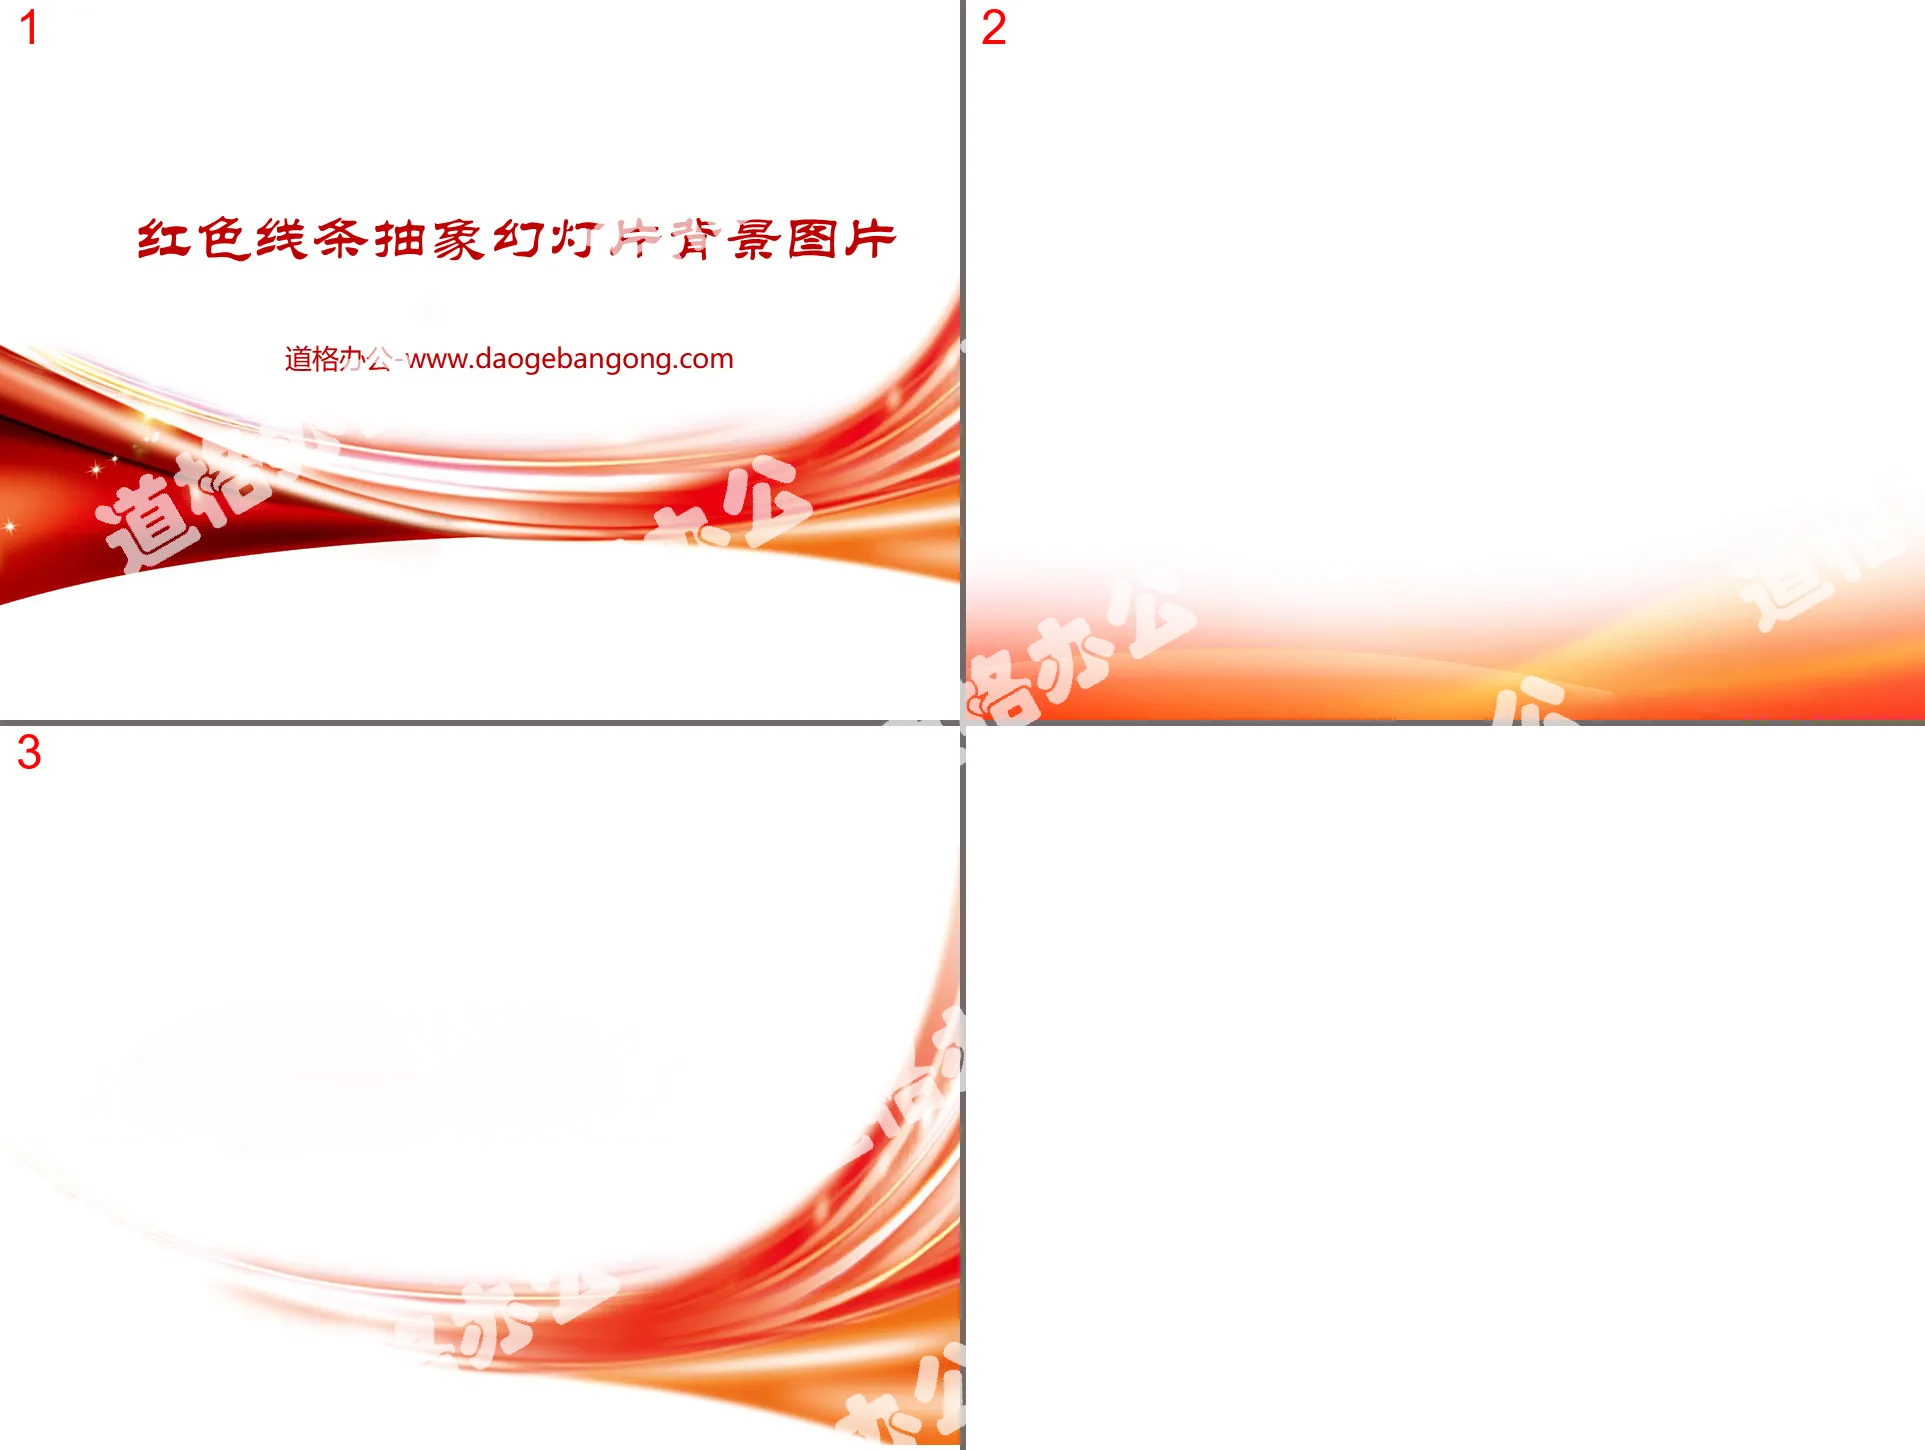 3张红色炫彩曲线构成的抽象PPT背景图片